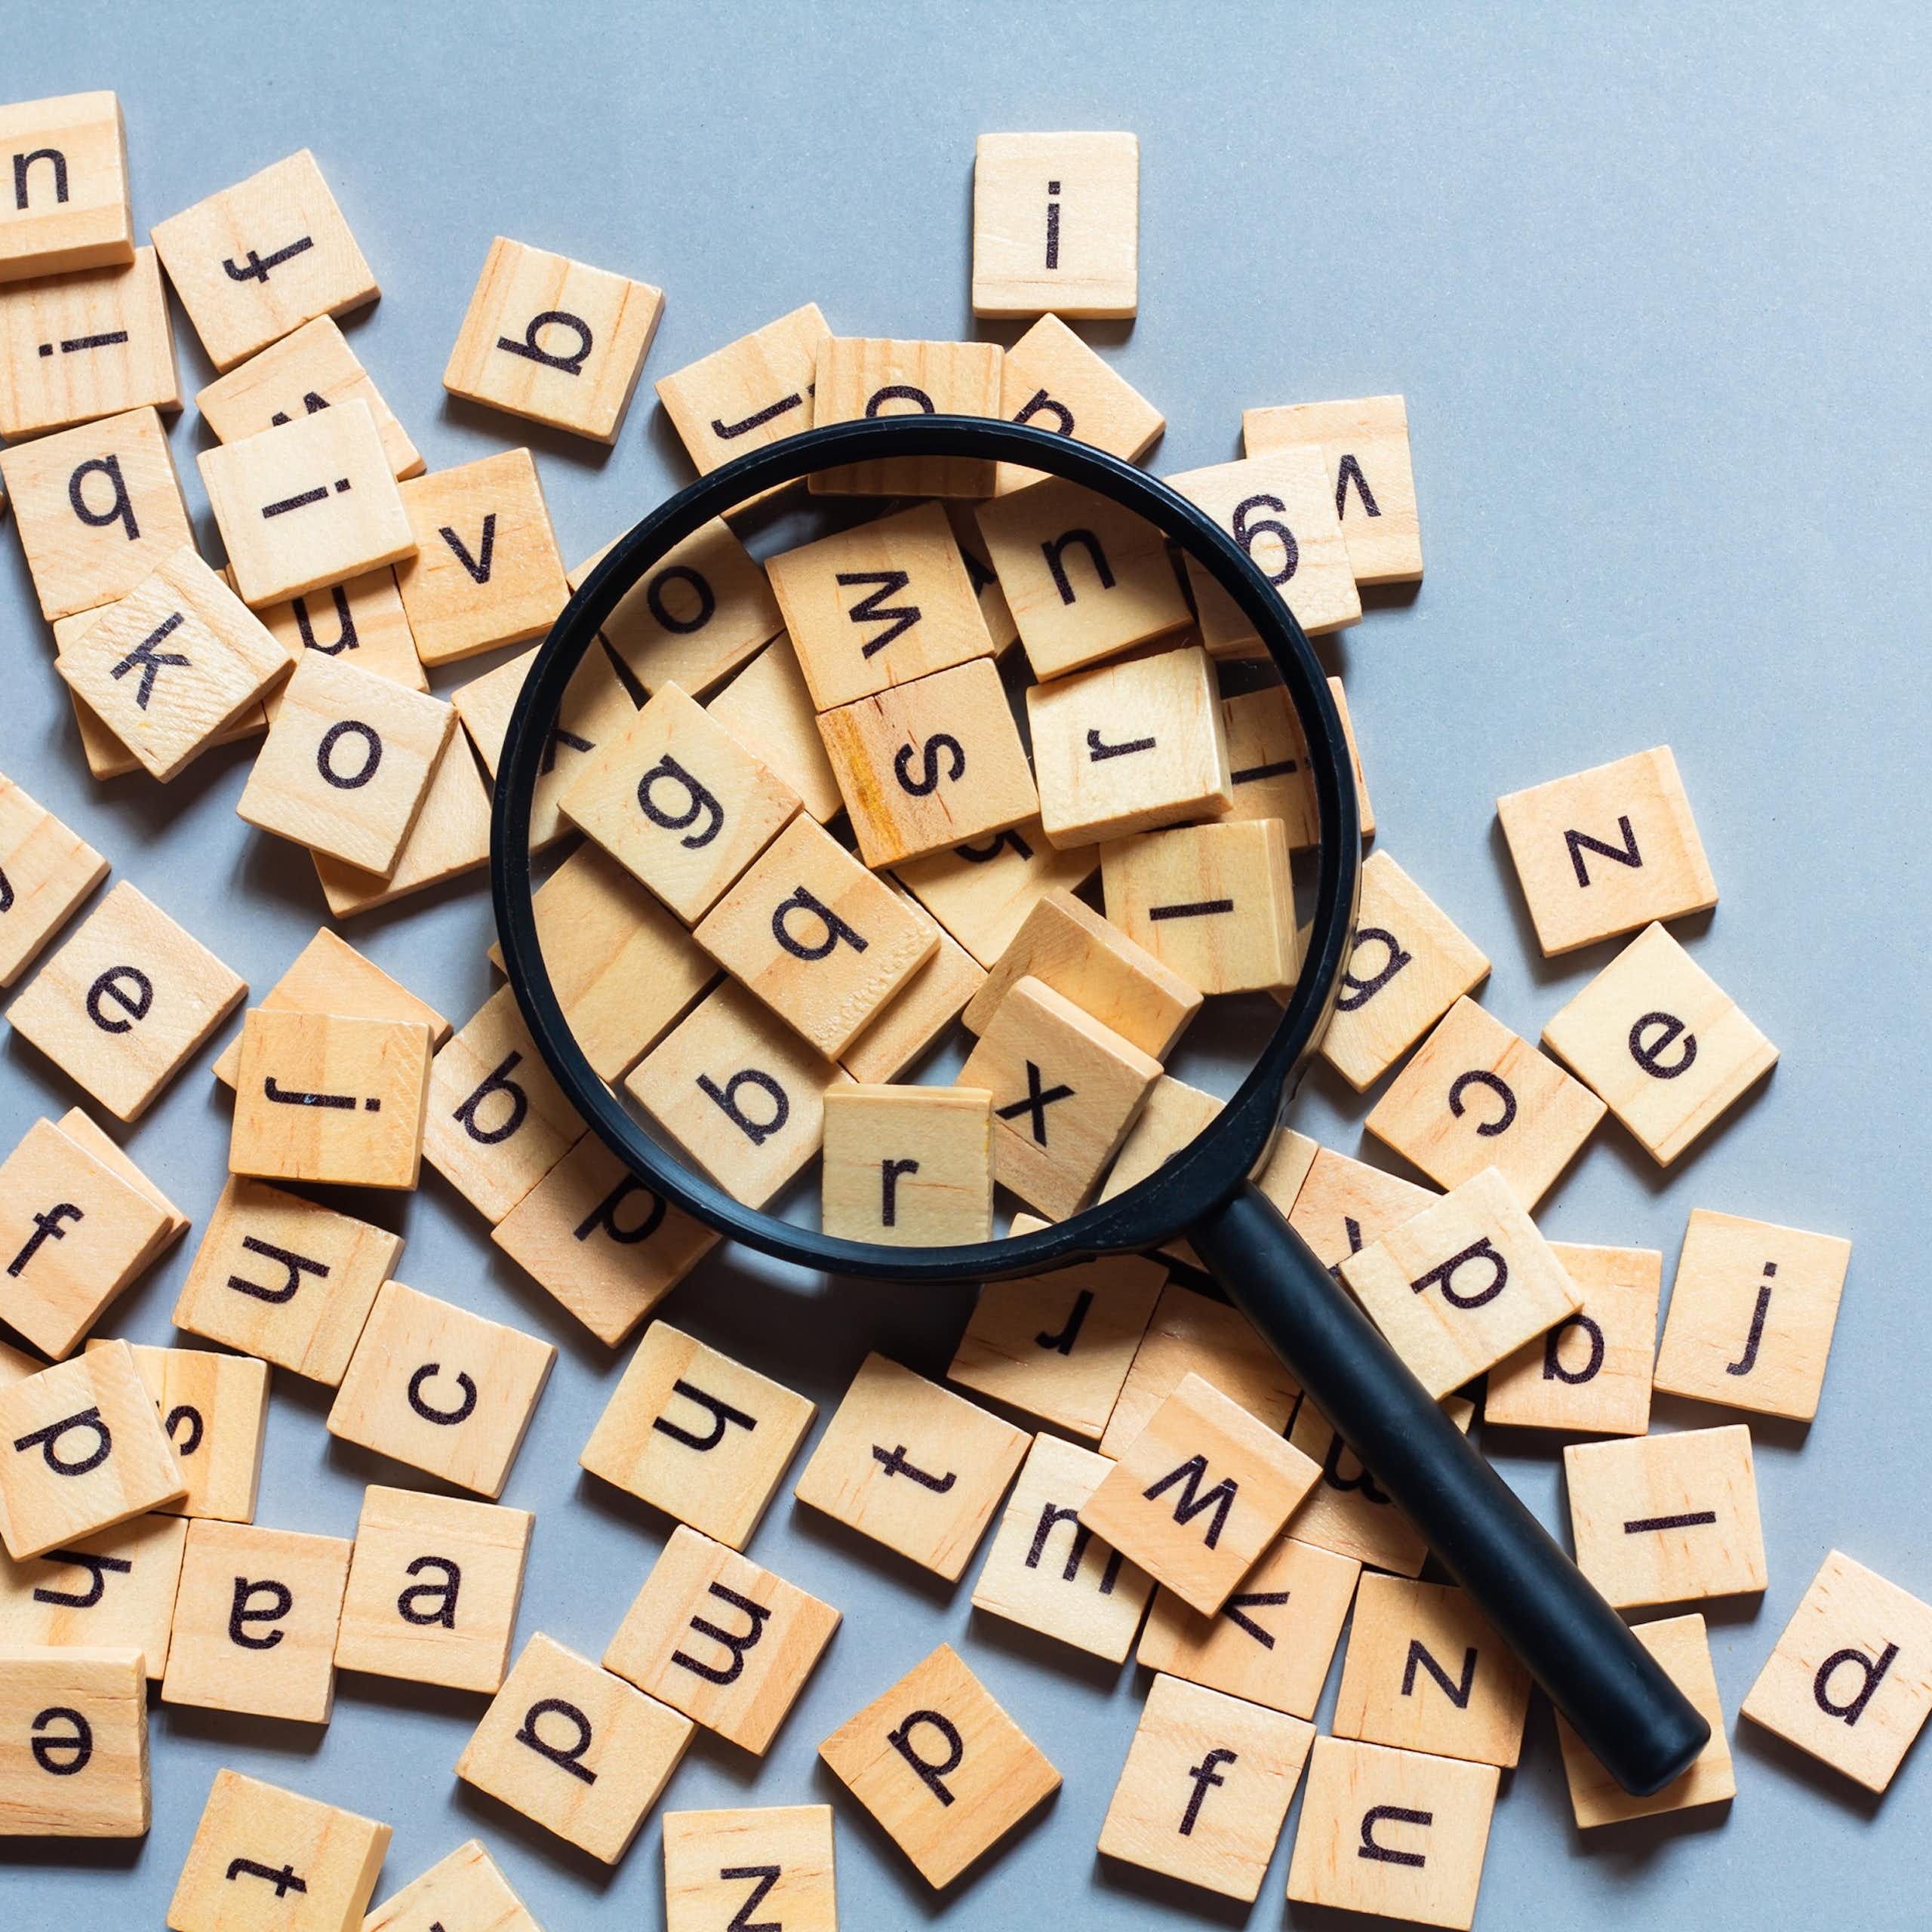 Una lupa sobre unas fichas de Scrabble con diferentes letras.